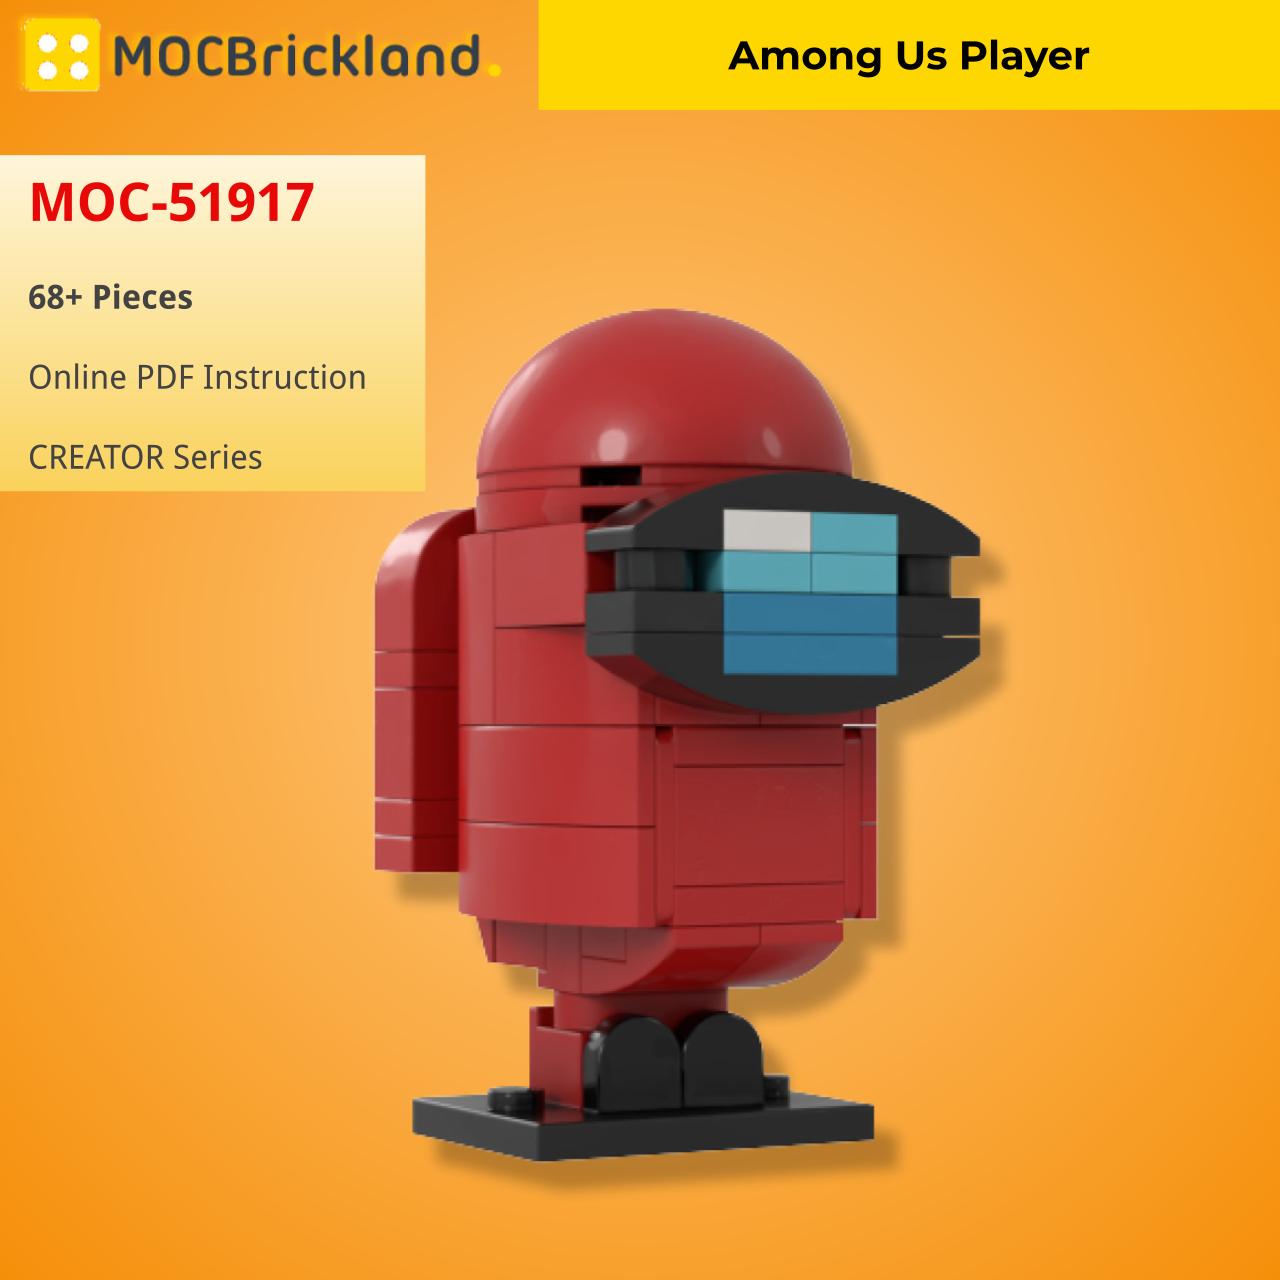 MOCBRICKLAND MOC-51917 Among Us Player